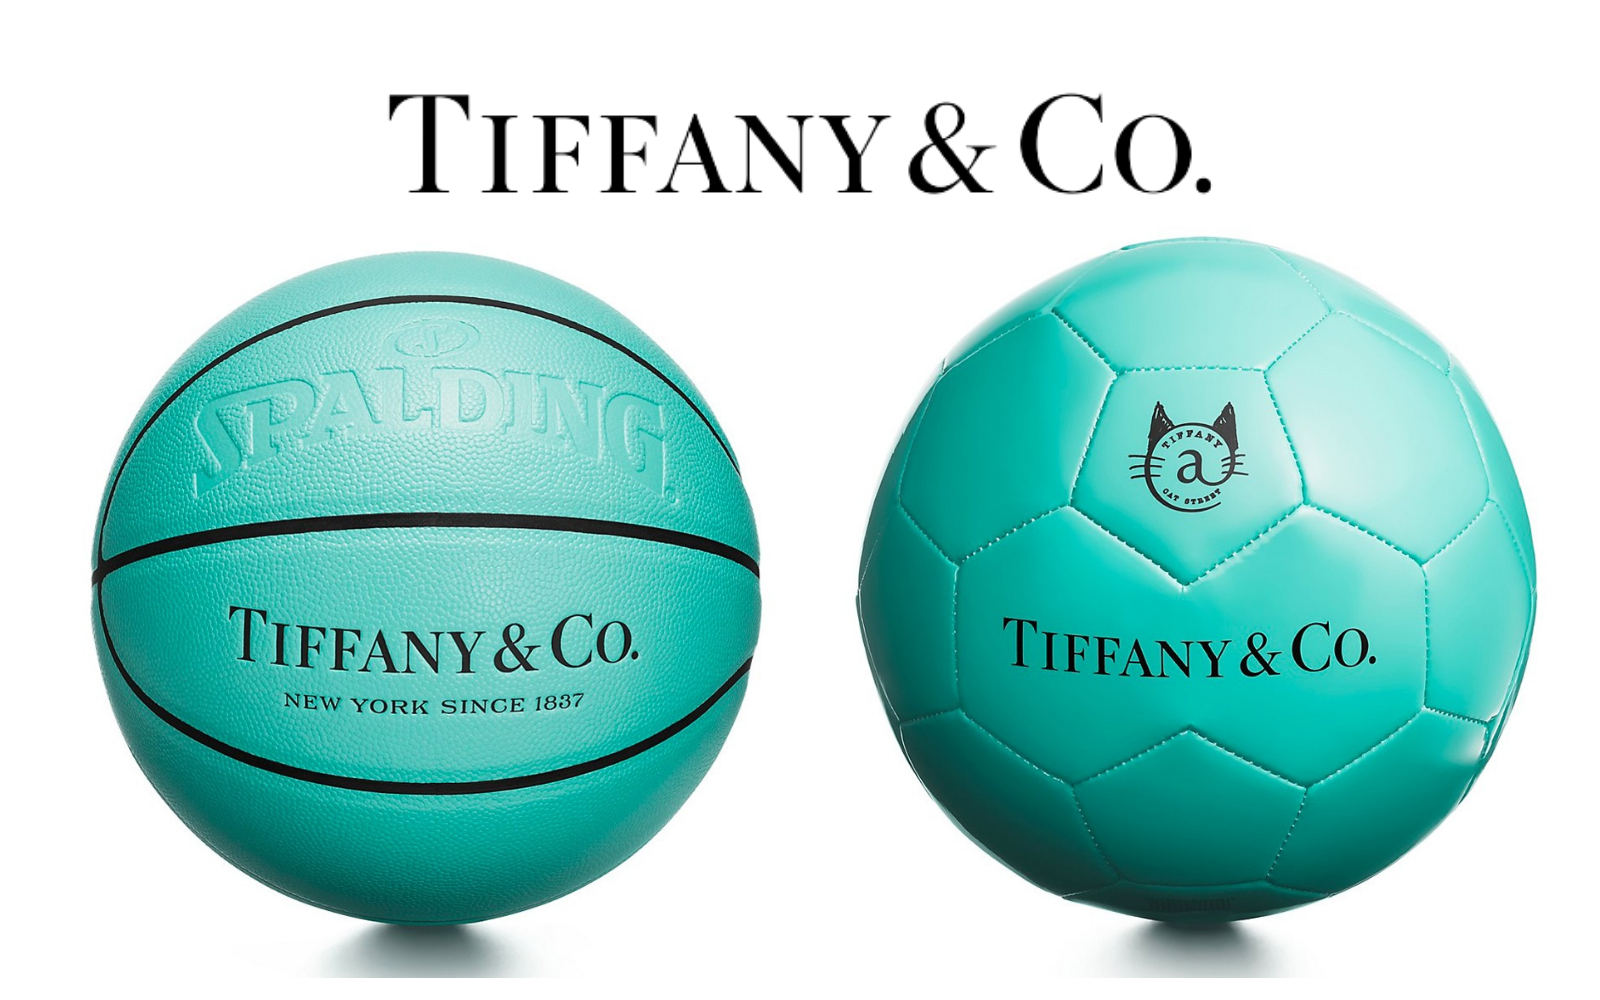 Tiffany & Co. - Tiffany has produced the Larry O'Brien